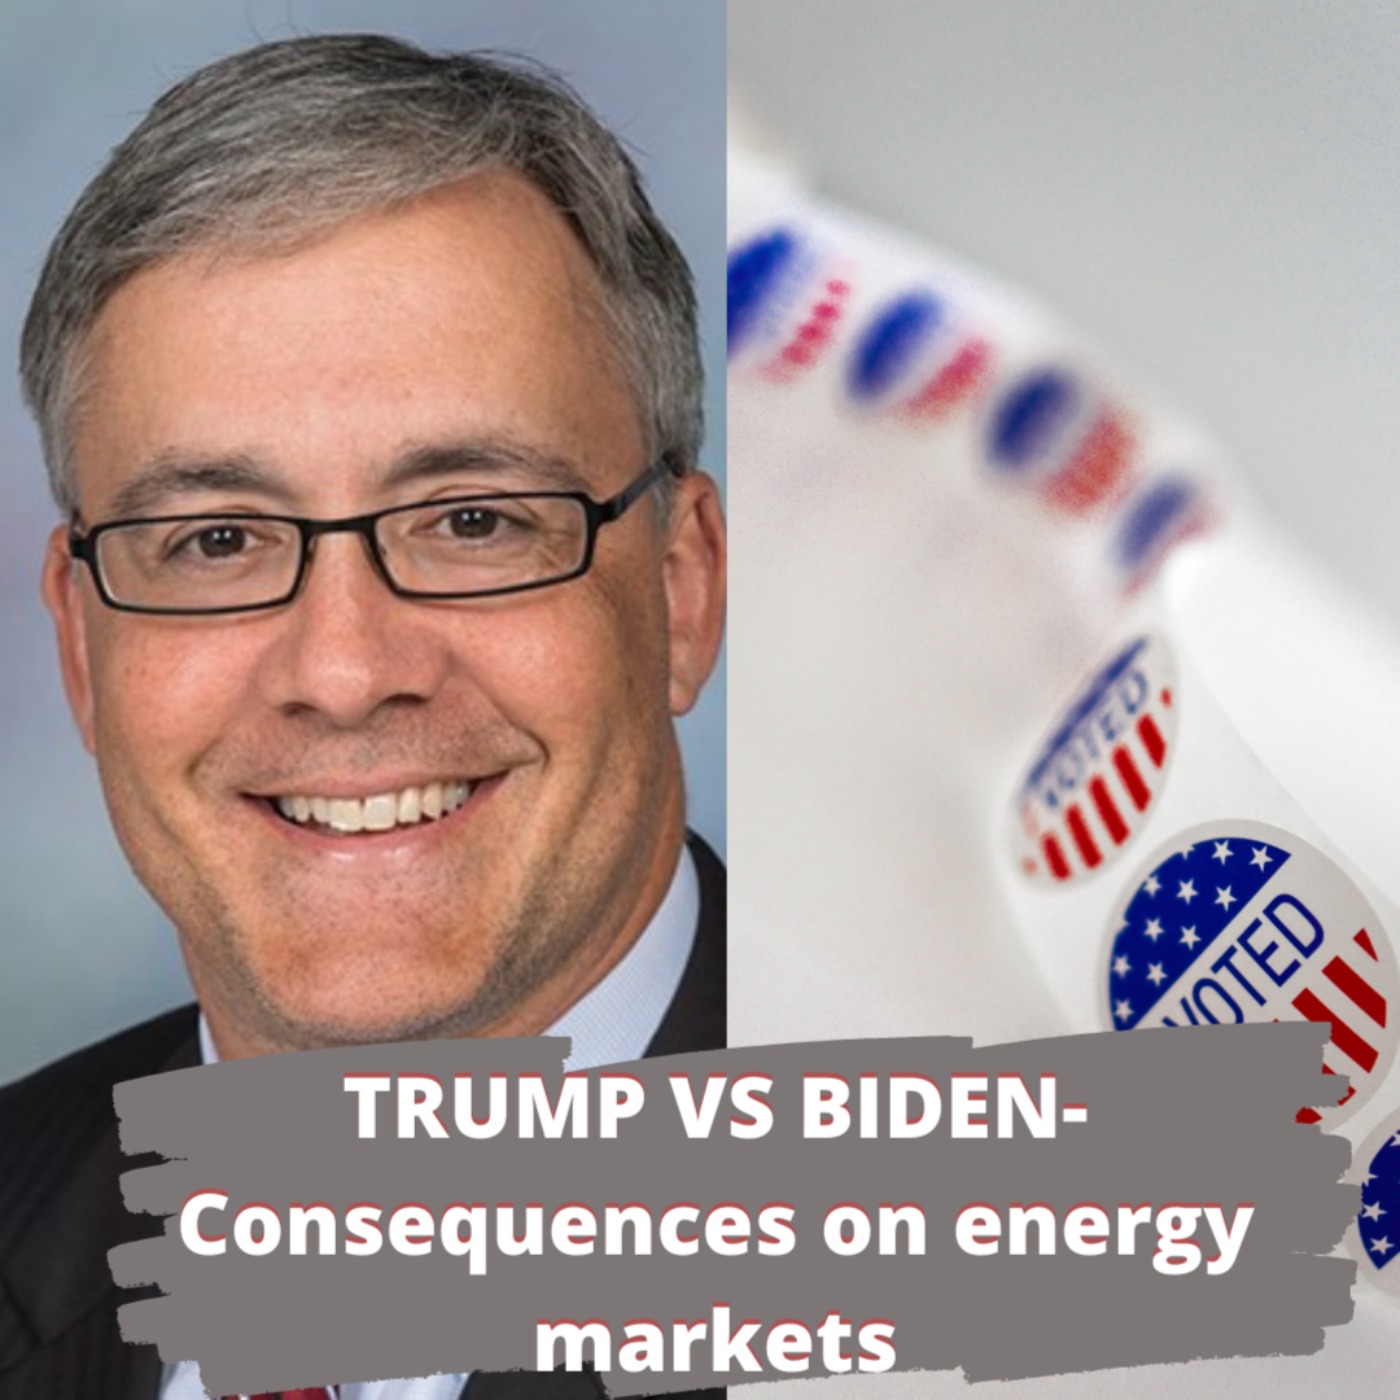 Biden vs Trump - consequences for energy markets?